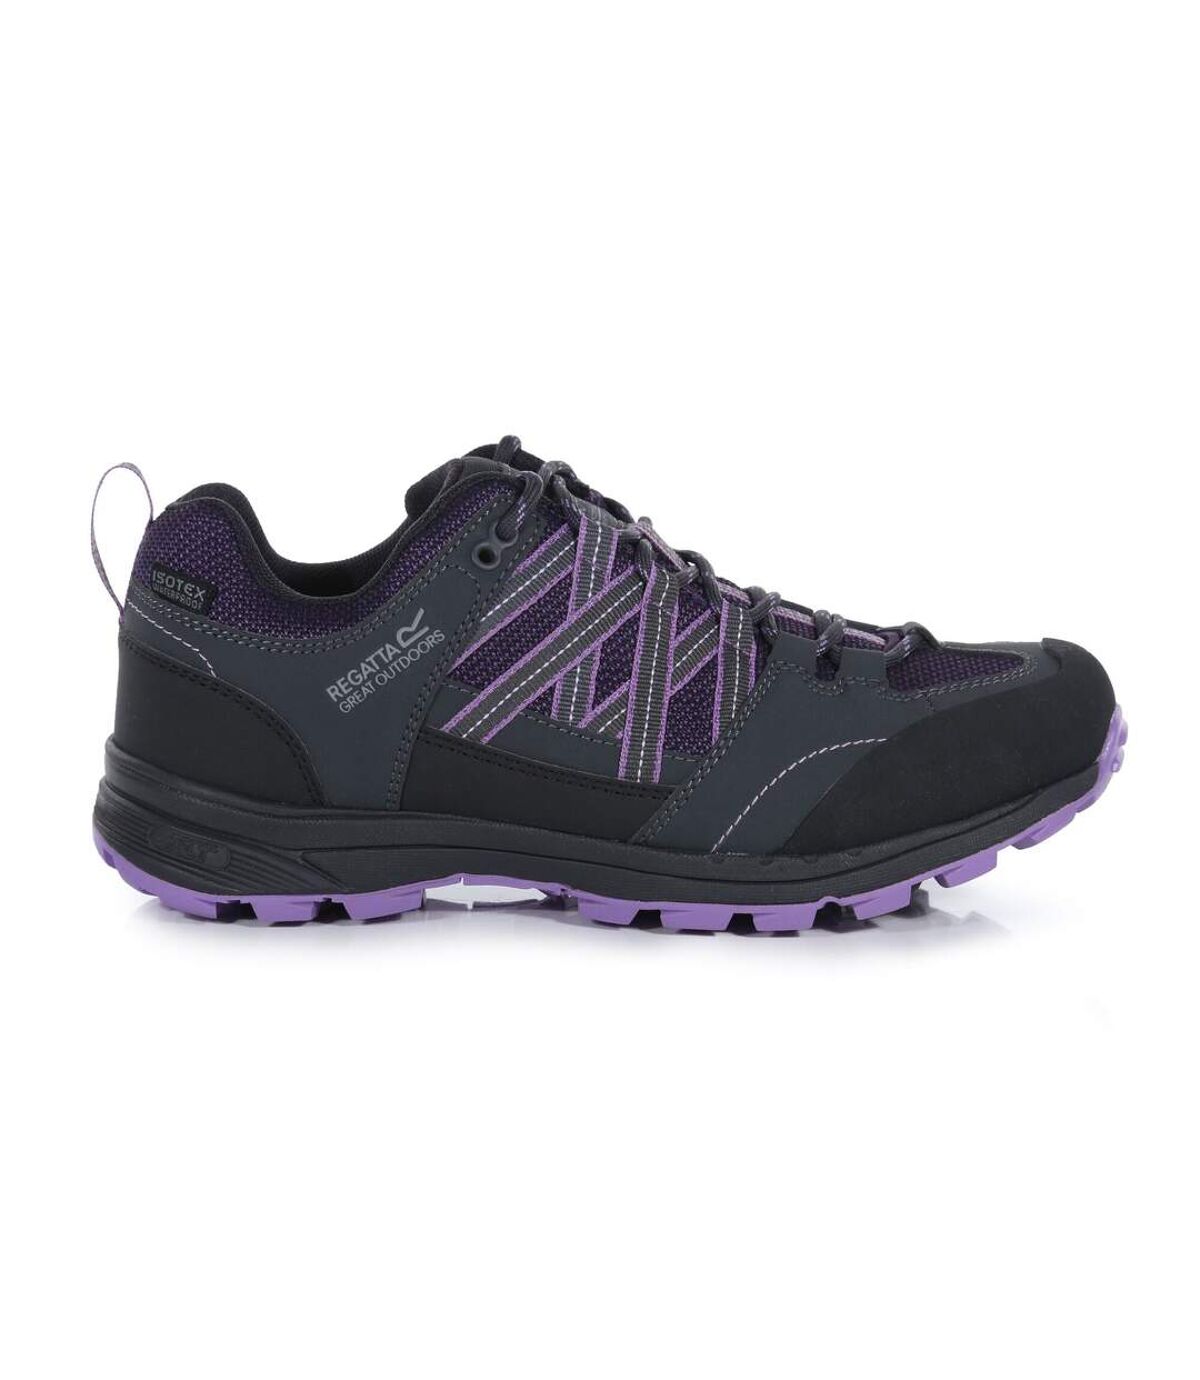 Regatta Womens/Ladies Samaris Low II Hiking Boots (Black/Purple) - UTRG3702